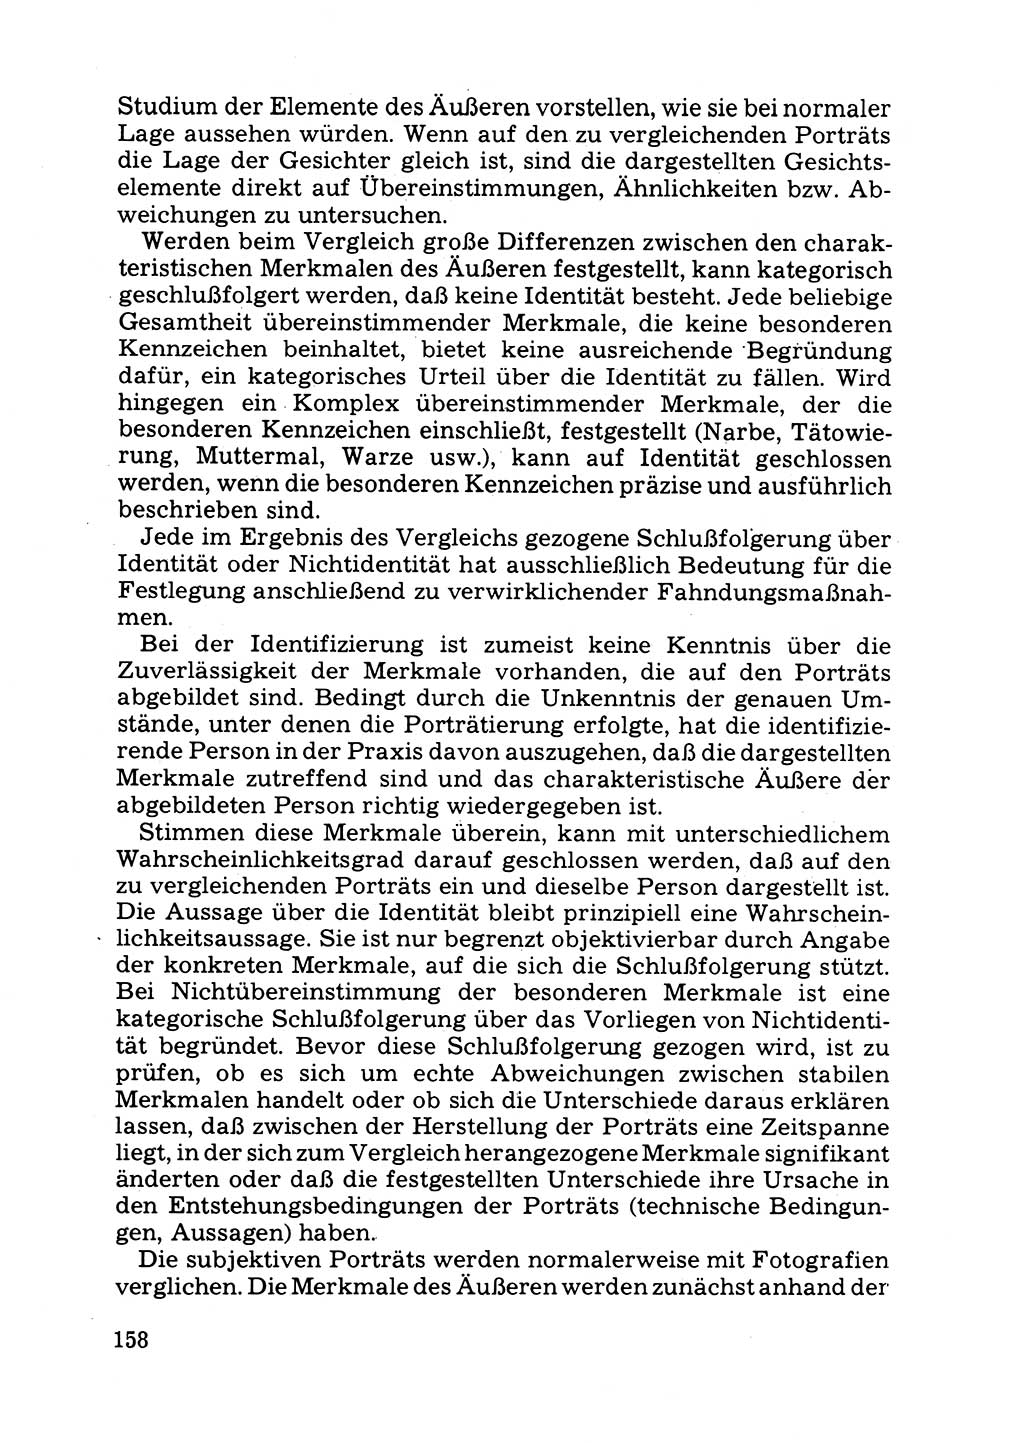 Das subjektive Porträt [Deutsche Demokratische Republik (DDR)] 1981, Seite 158 (Subj. Port. DDR 1981, S. 158)